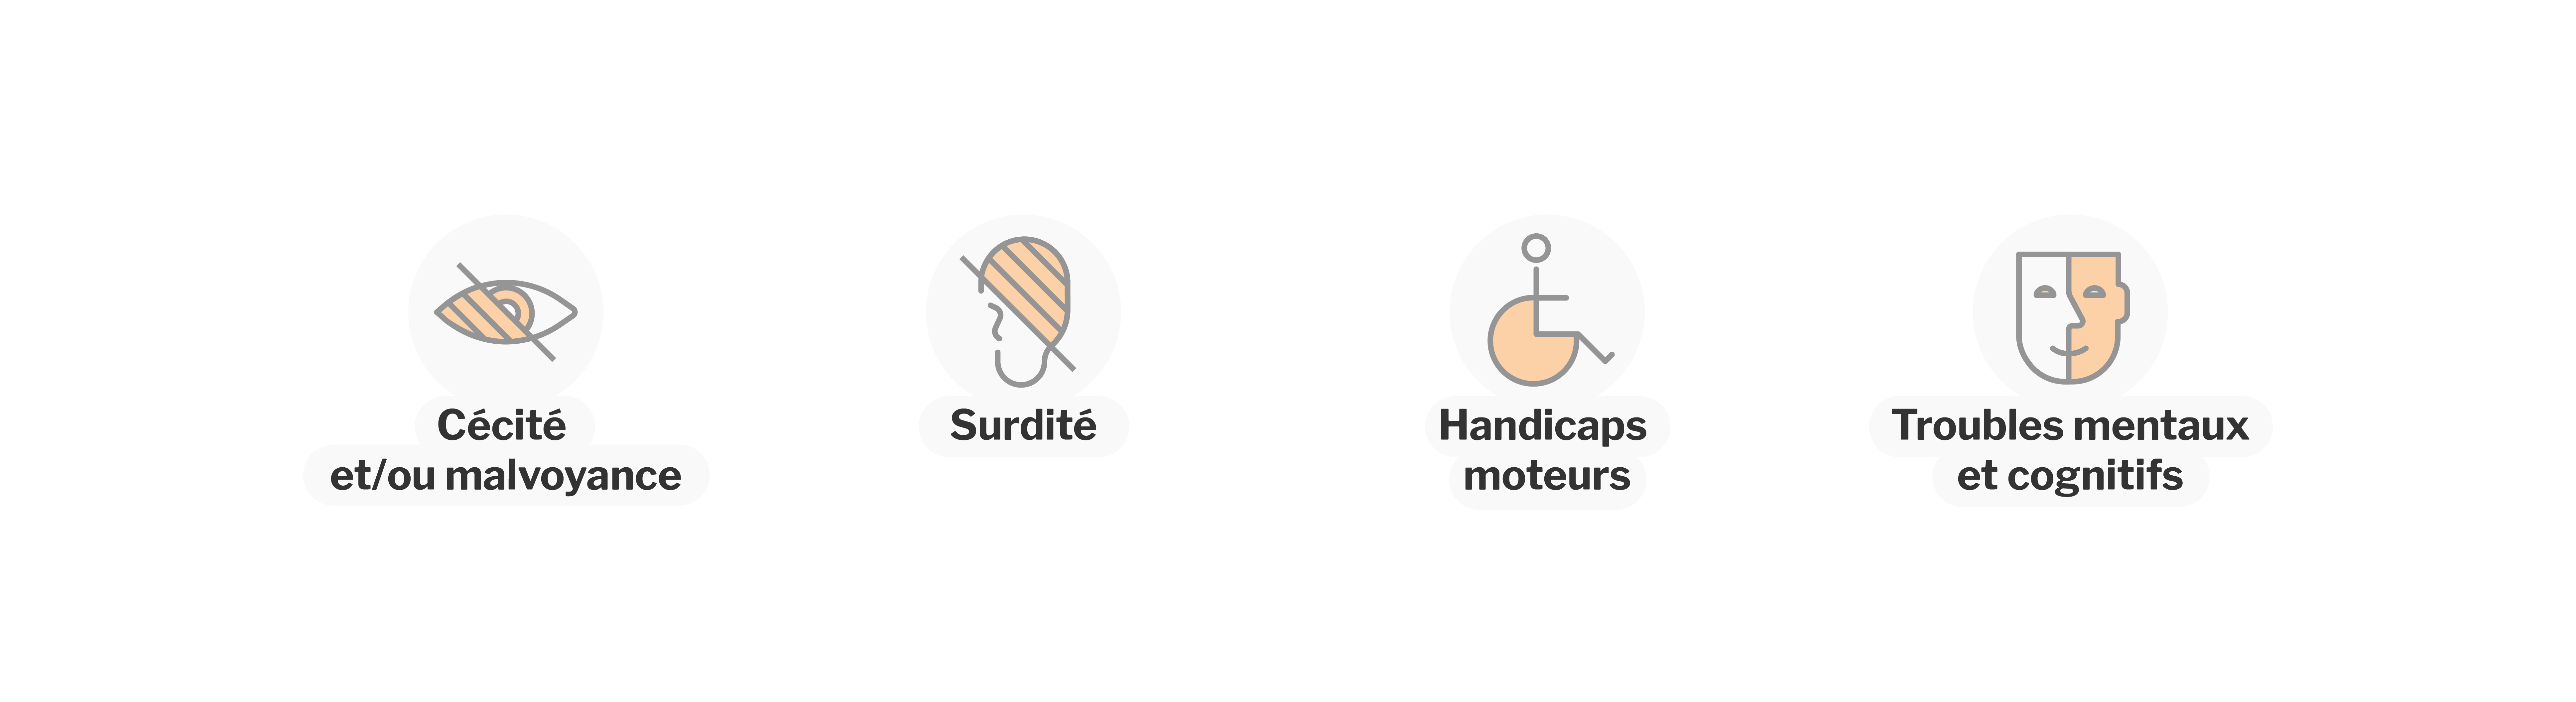 Pictogrammes représentant différents types de handicaps